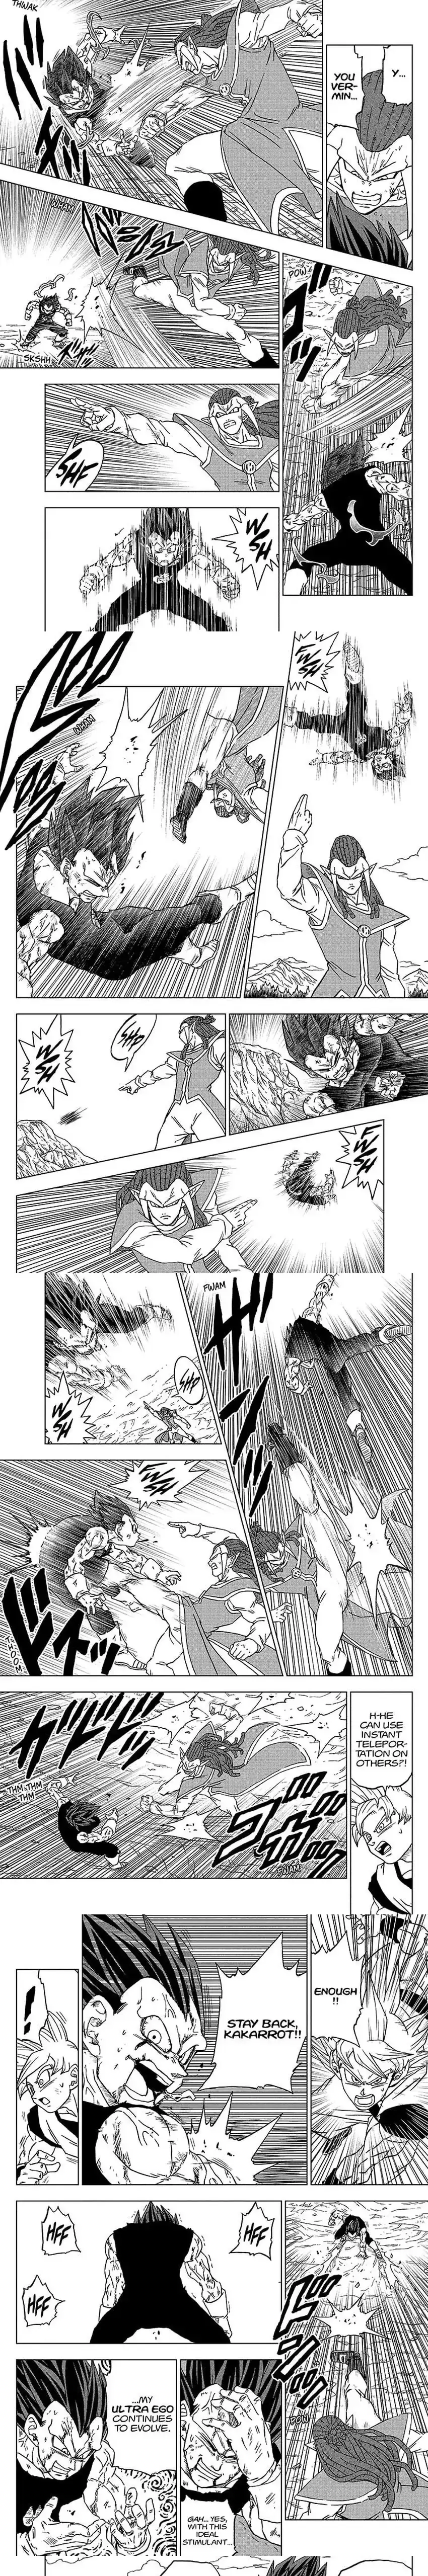 Dragon Ball Super - 85 page 2-9ec8d6c3